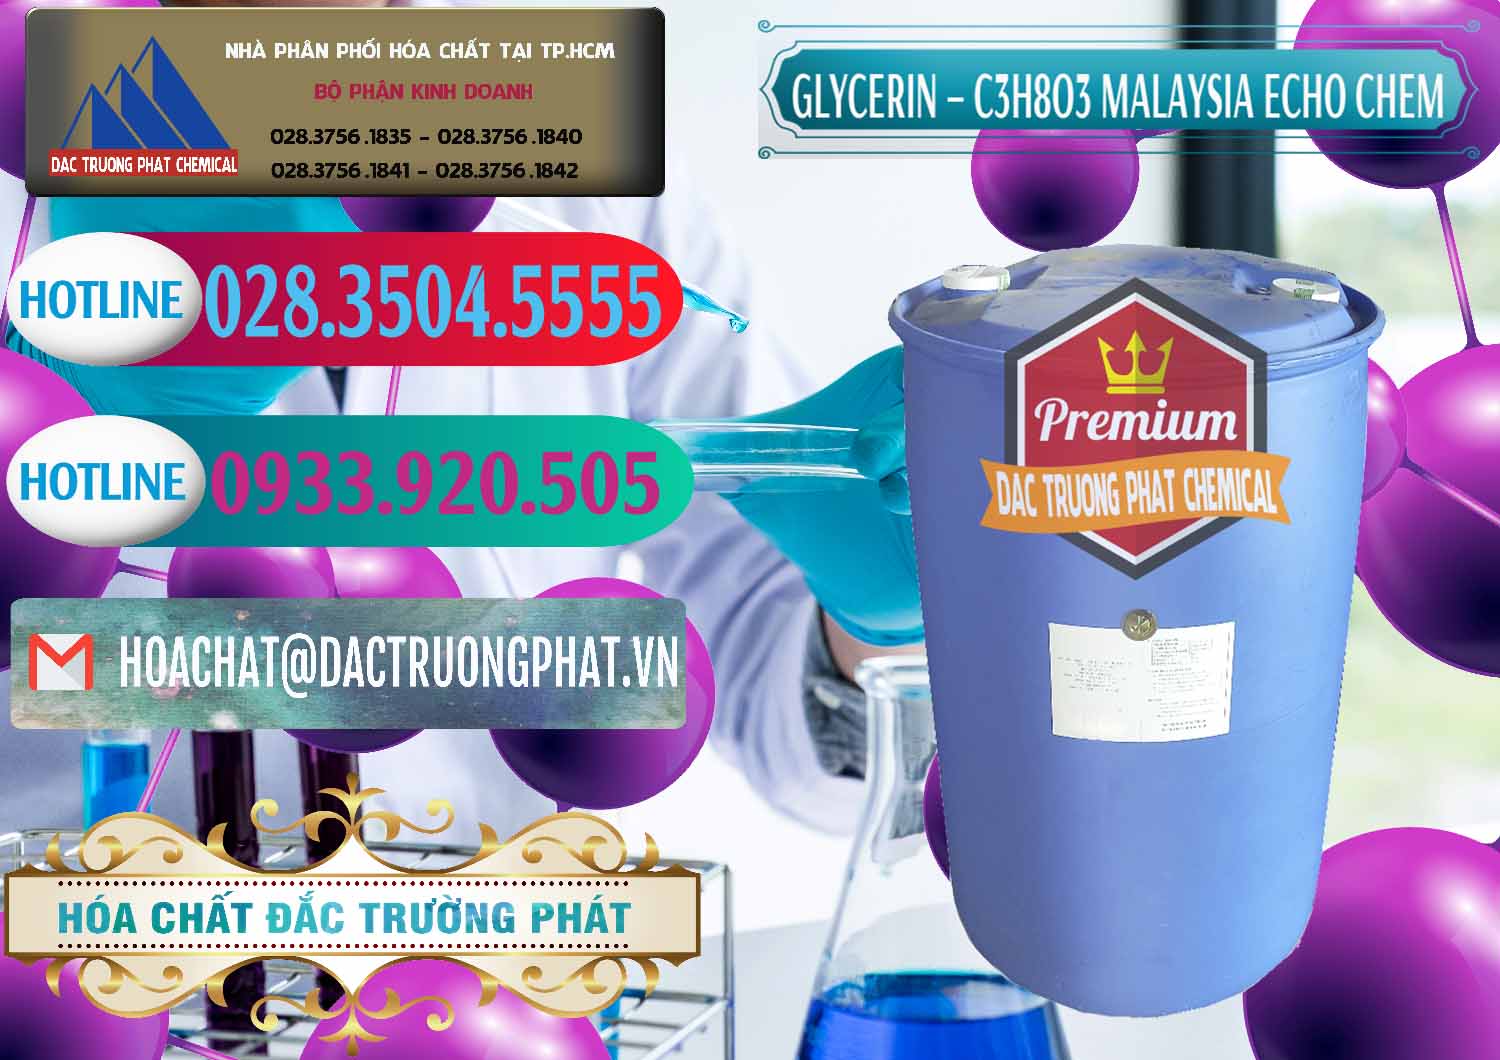 Chuyên kinh doanh & bán Glycerin – C3H8O3 99.7% Echo Chem Malaysia - 0273 - Nhà phân phối ( bán ) hóa chất tại TP.HCM - truongphat.vn